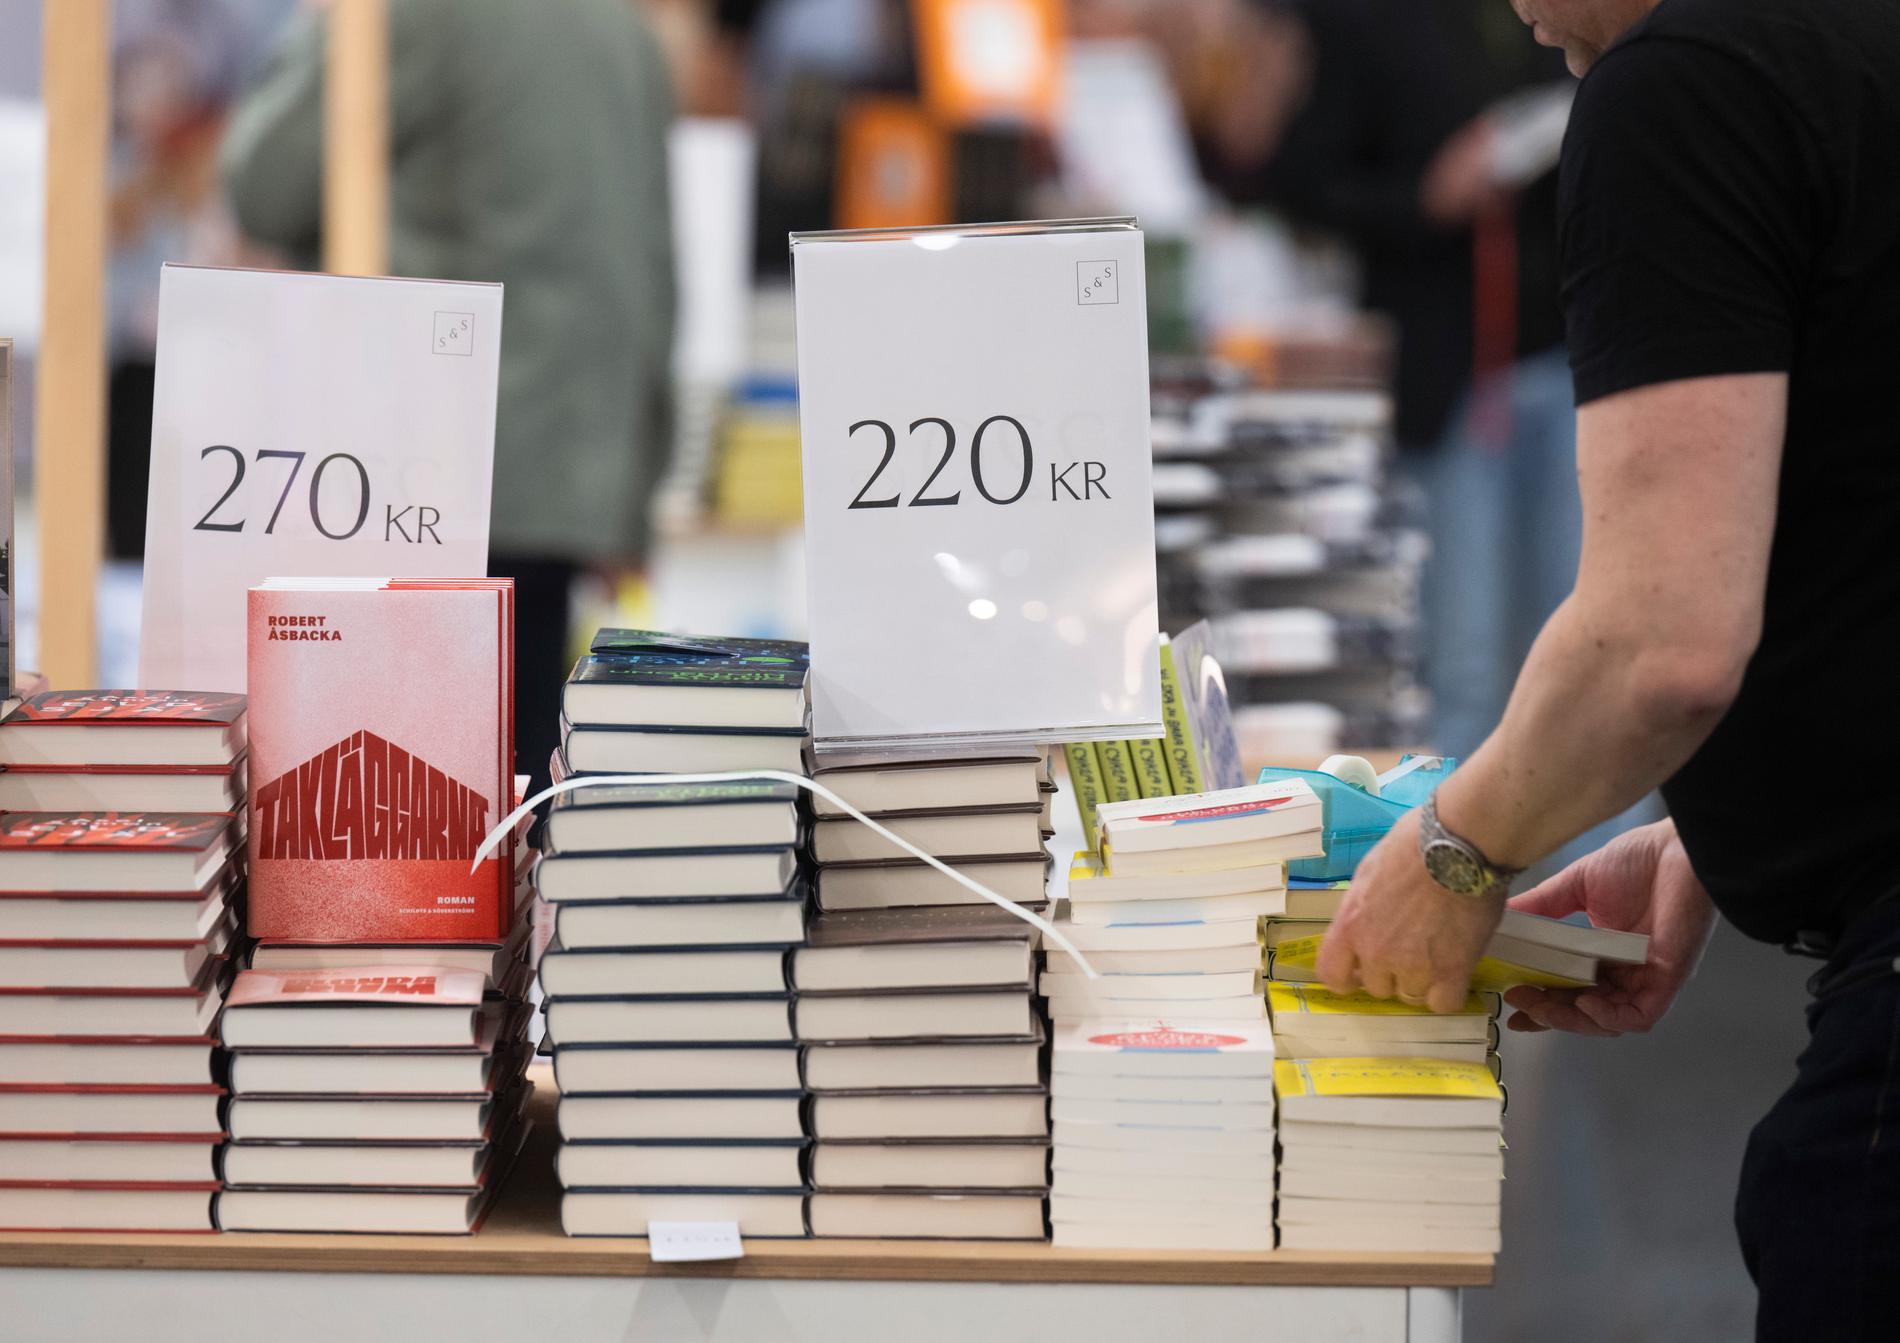 Värdemässigt ökade bokförsäljningen under 2023 jämfört med 2022. Men det var tack vare höjda priser på böcker. Volymmässigt minskade försäljningen. Arkivbild.